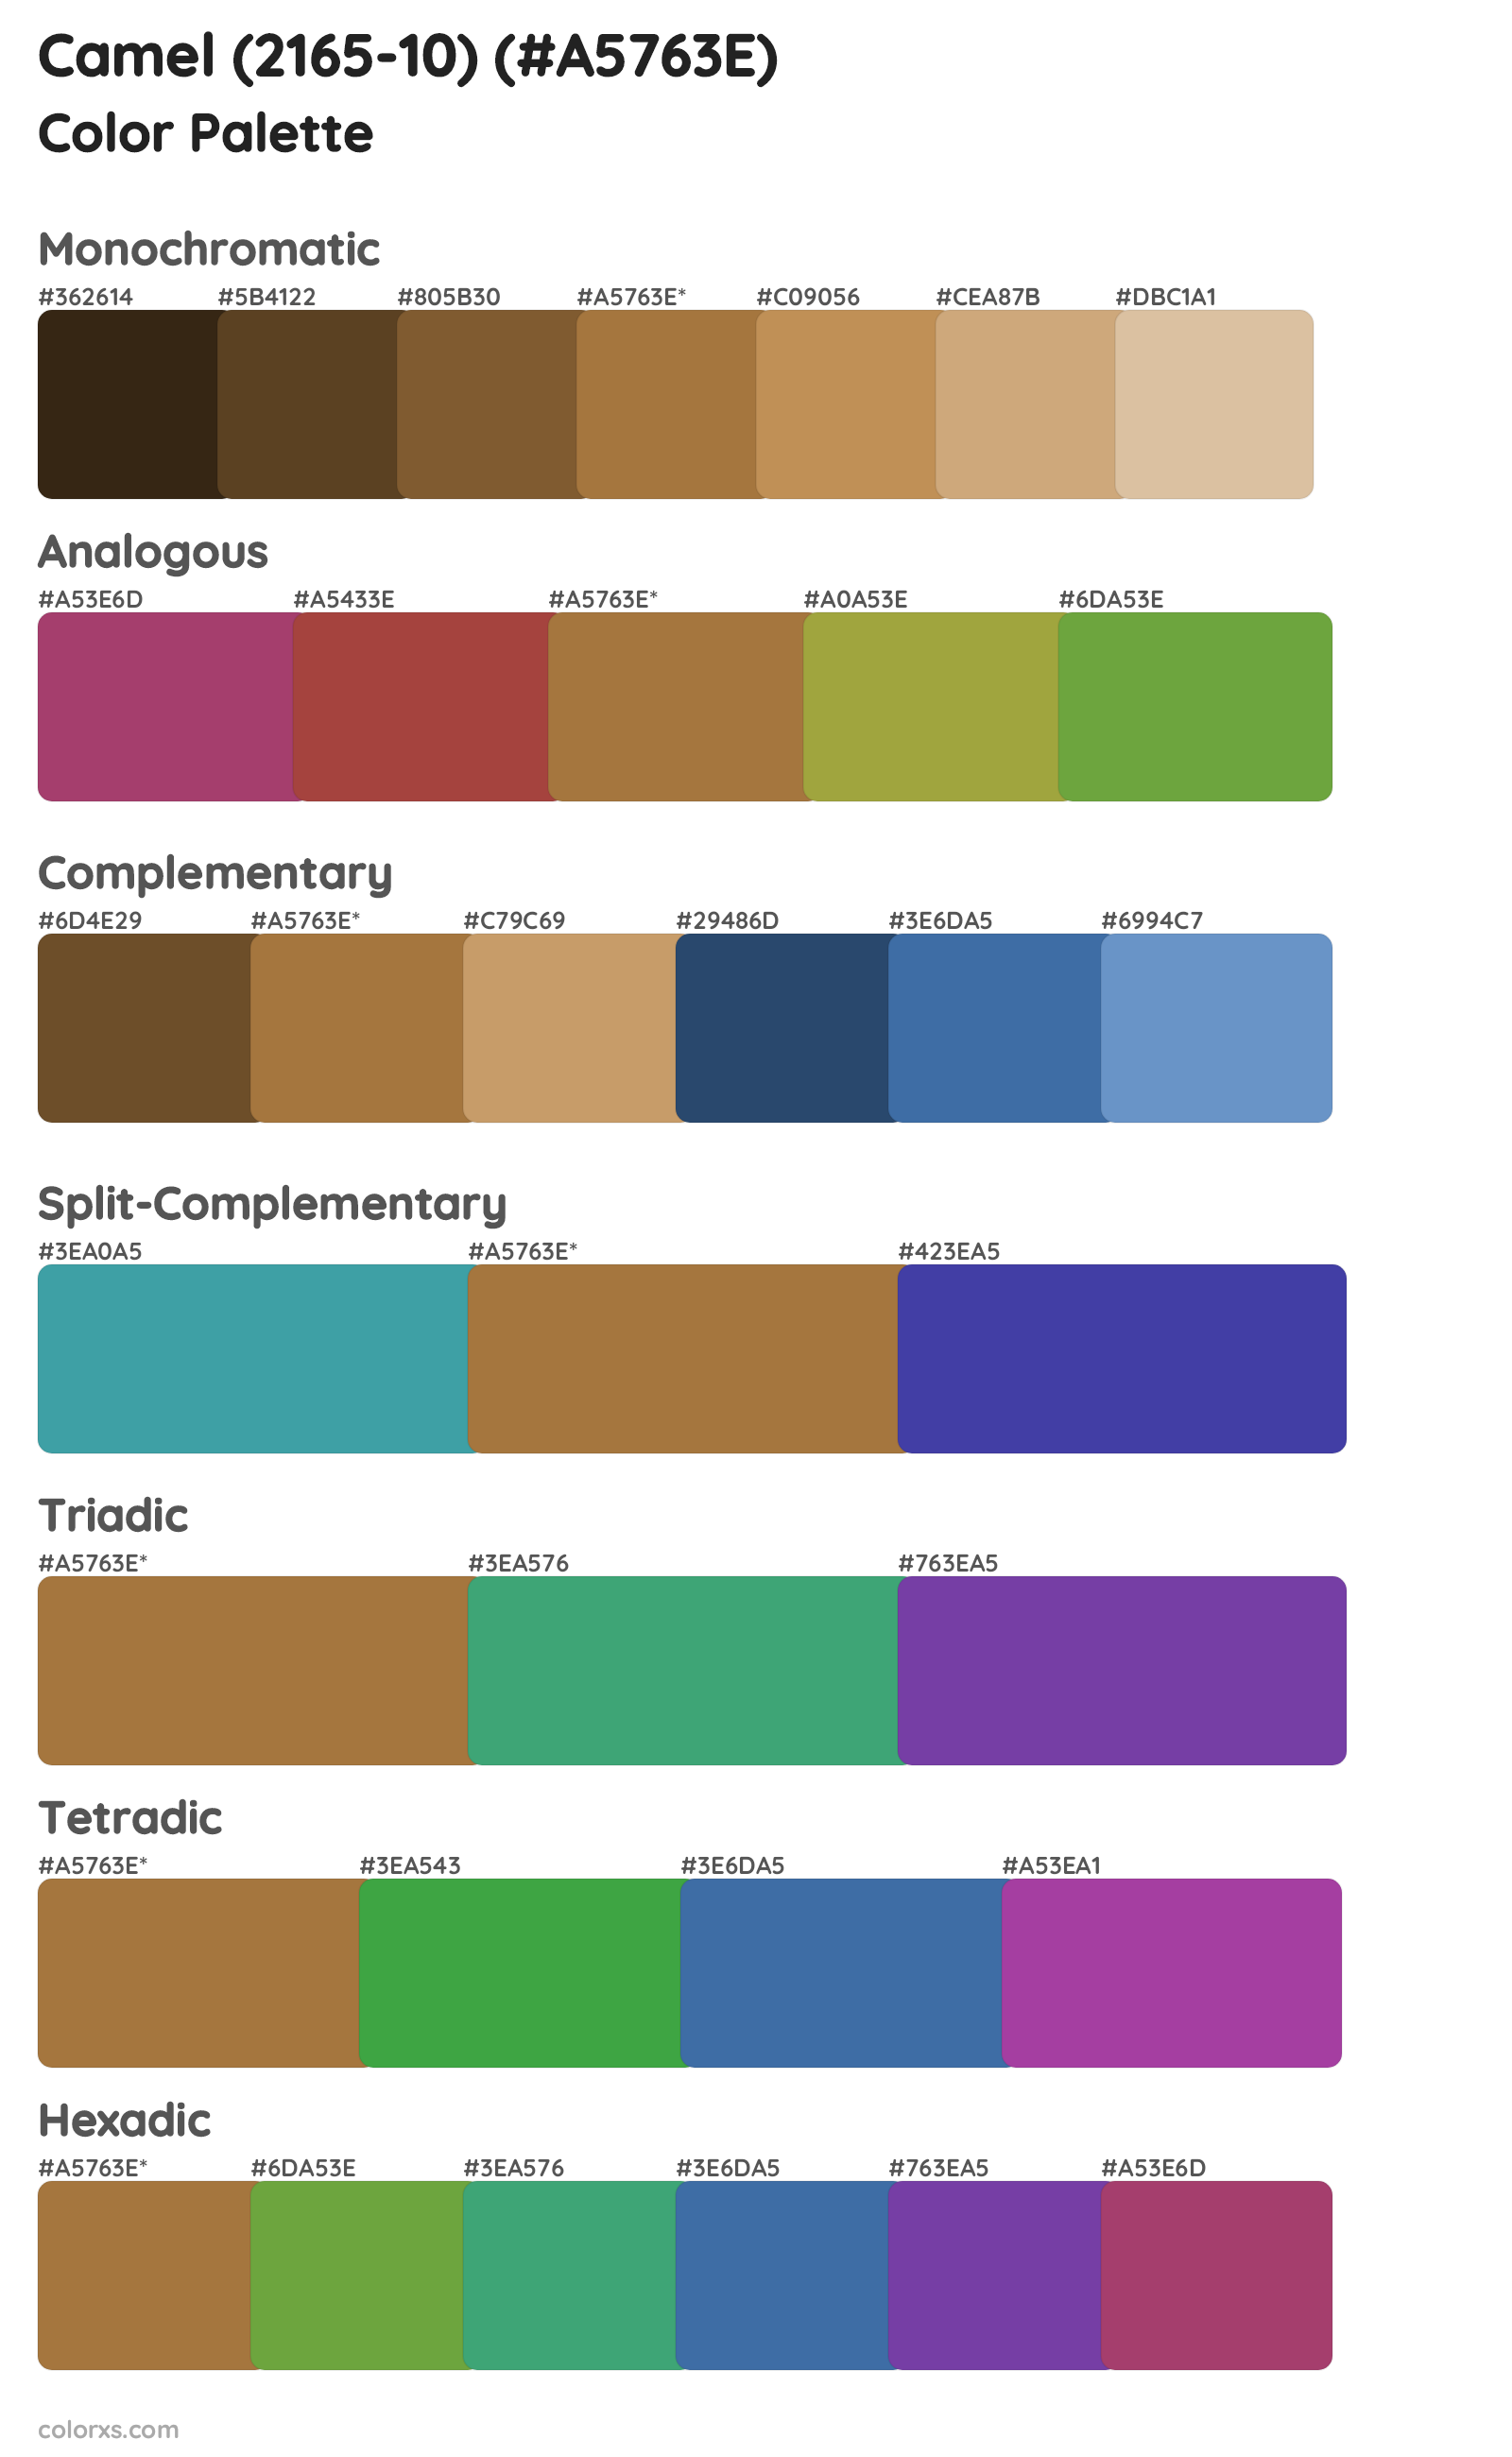 Camel (2165-10) Color Scheme Palettes